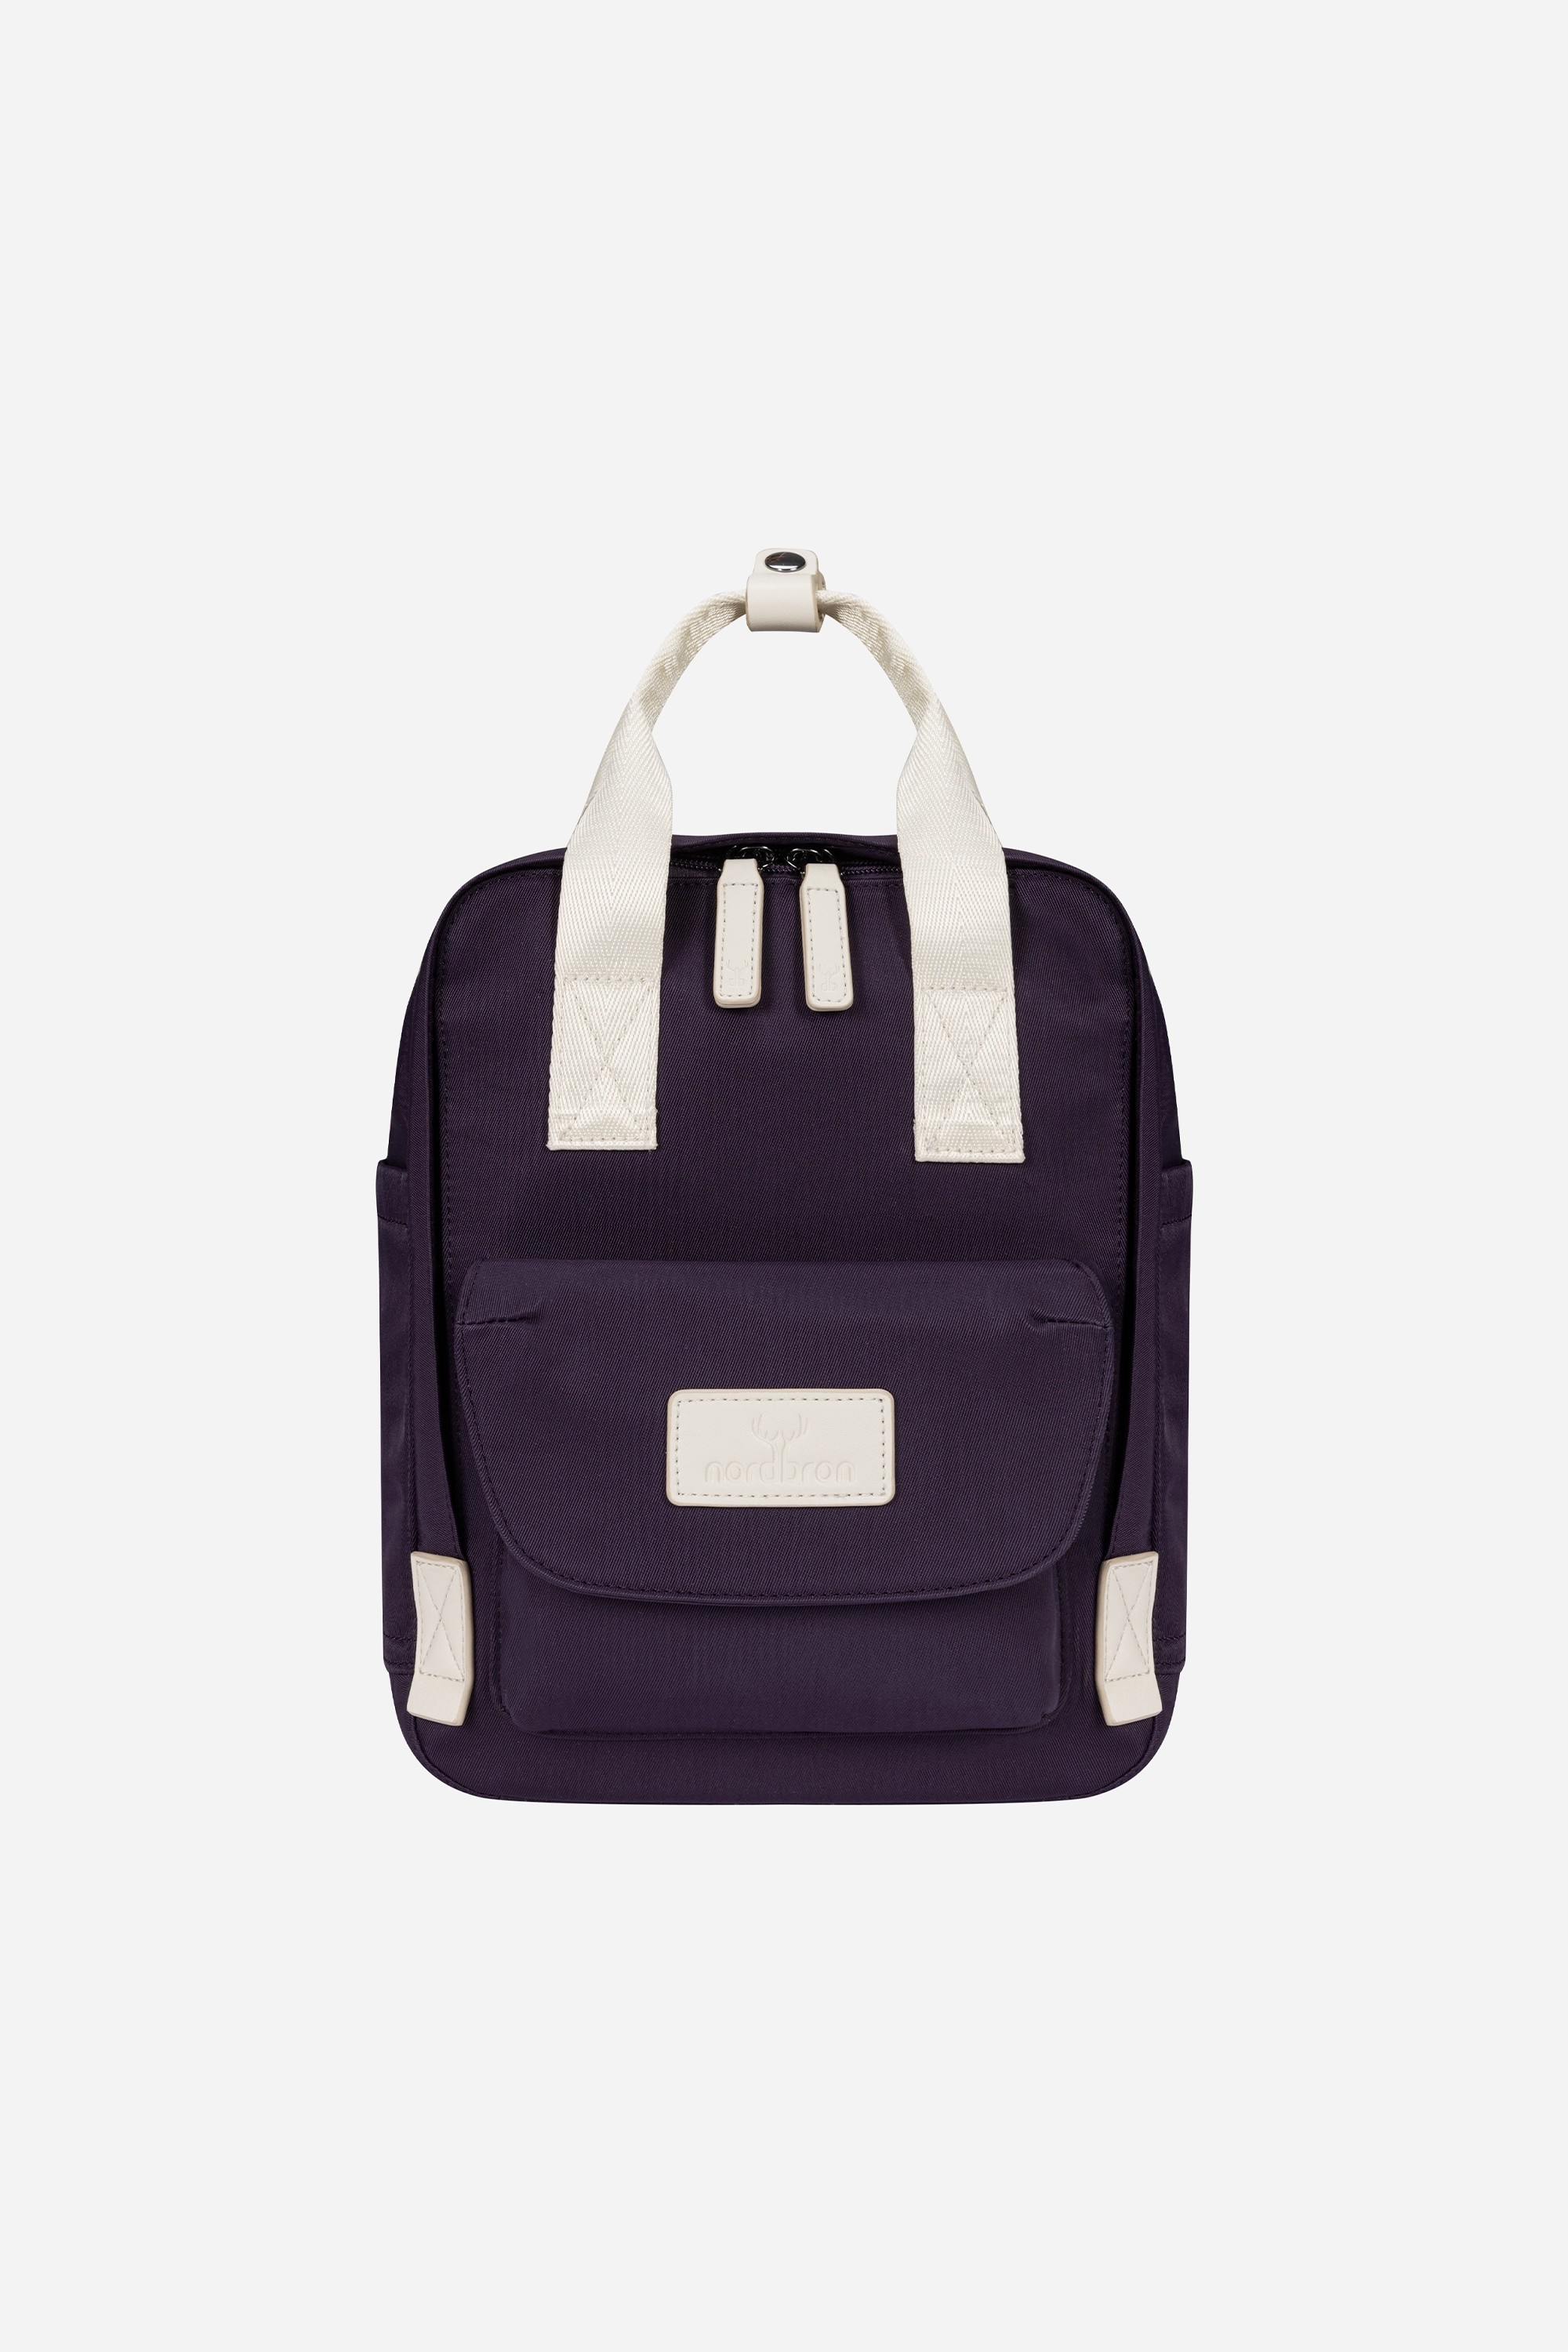 Lucerne Nordbron Mini Backpack - Purple